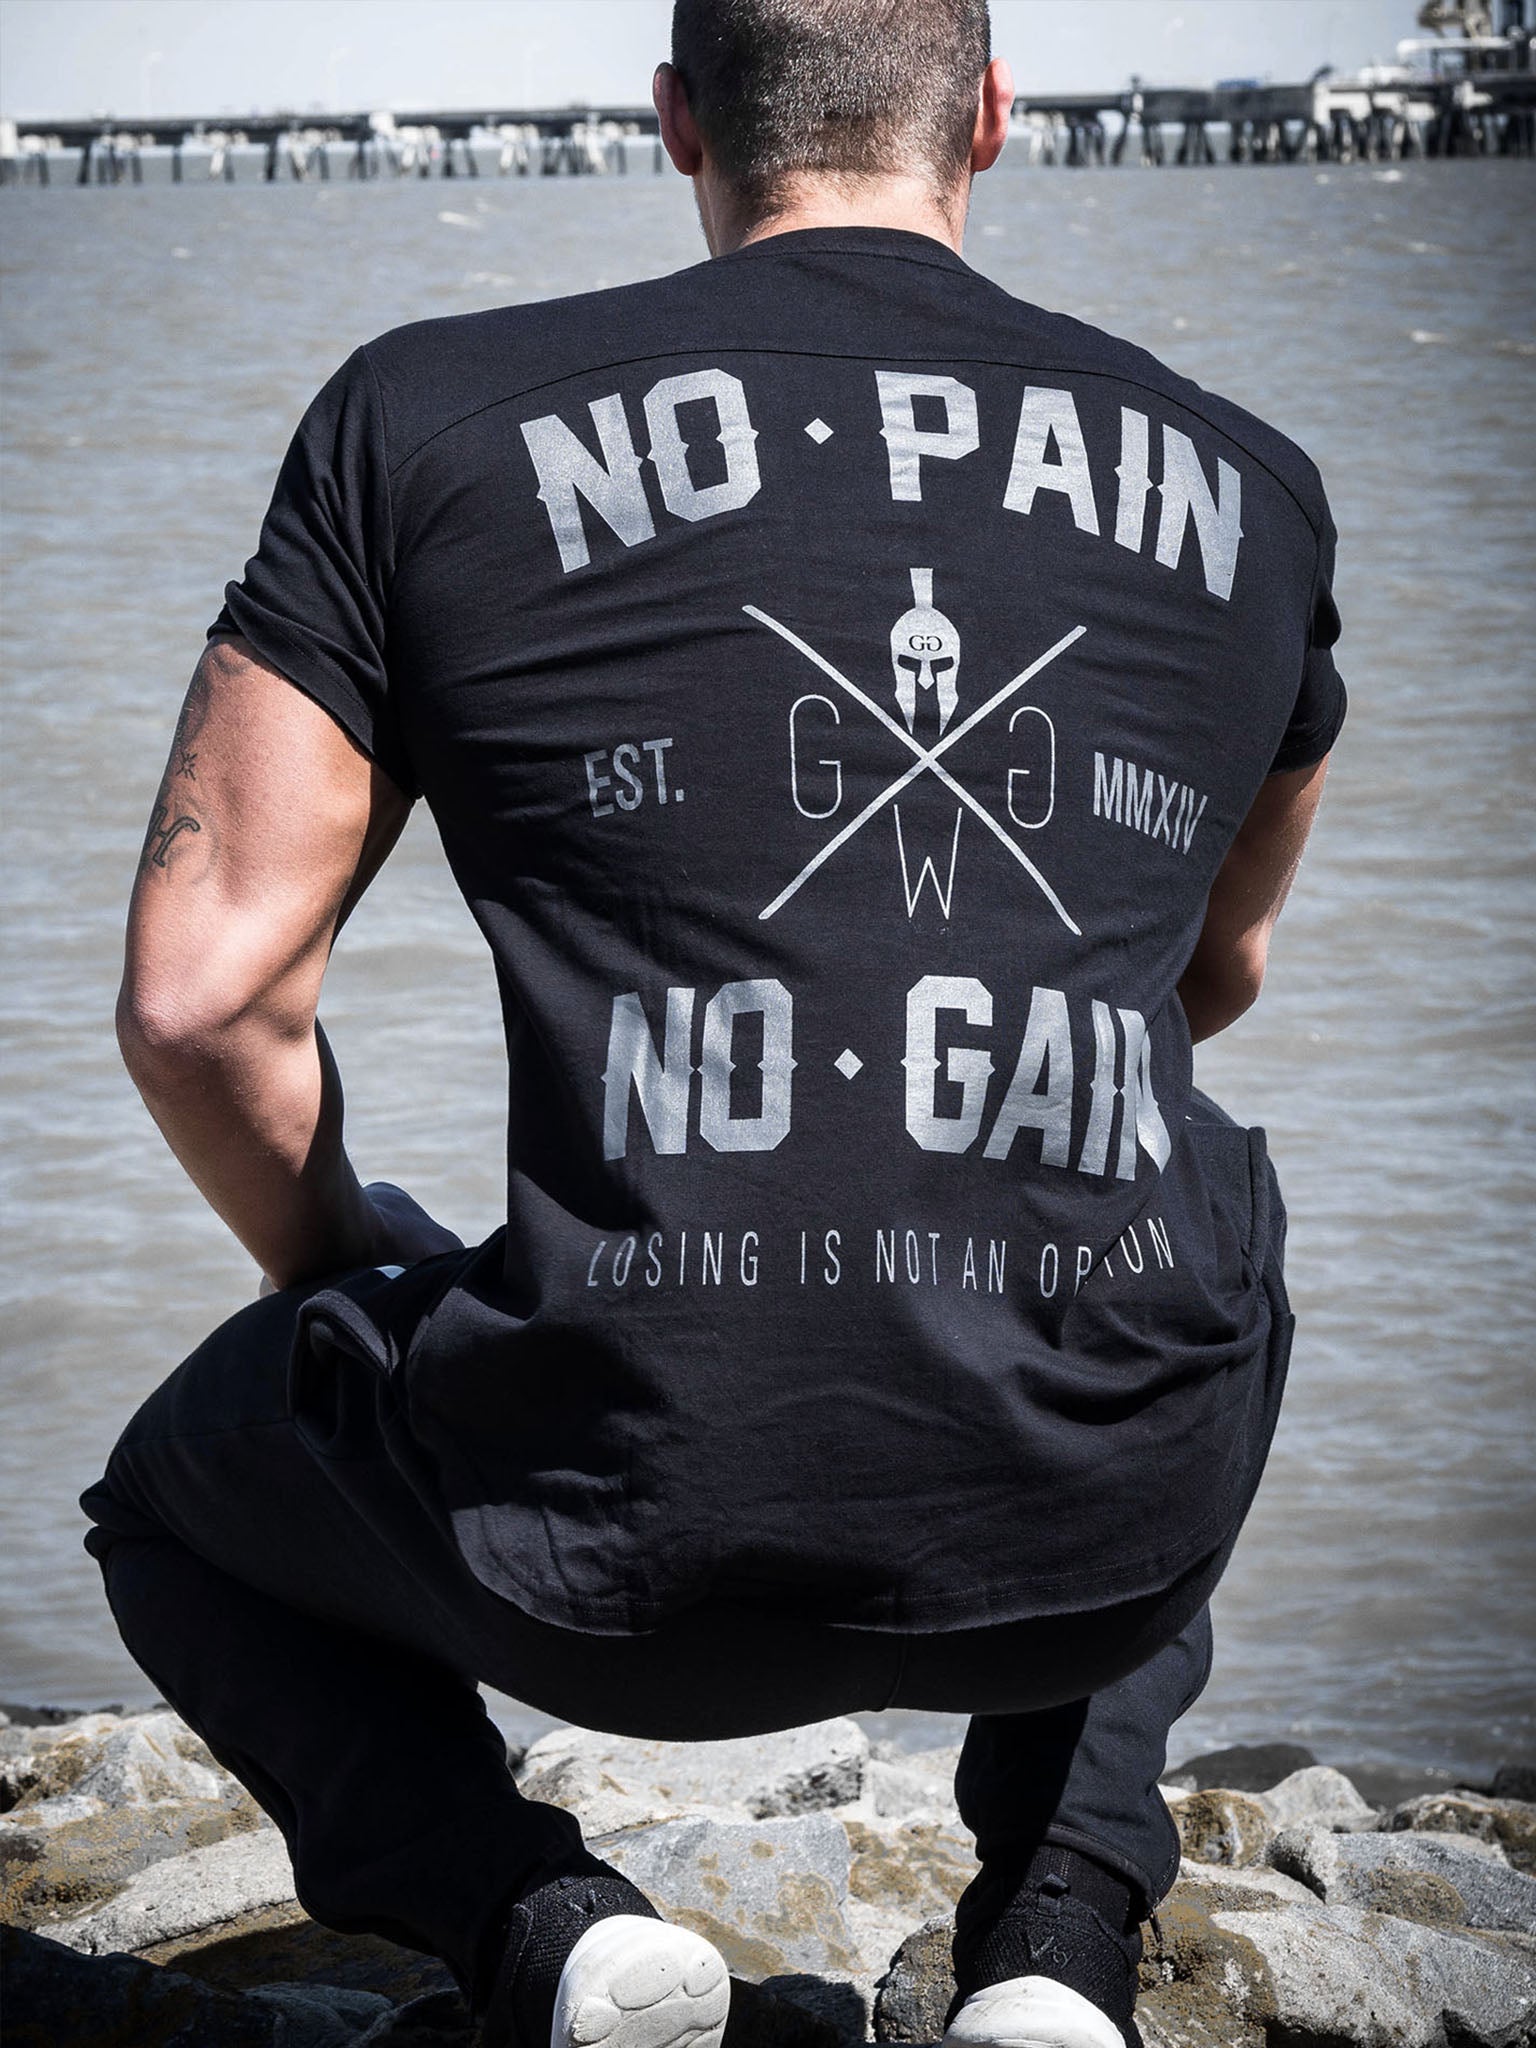 Hochwertiges Gym Generation T-Shirt mit "No Pain No Gain" Slogan, ideal für intensive Workouts.